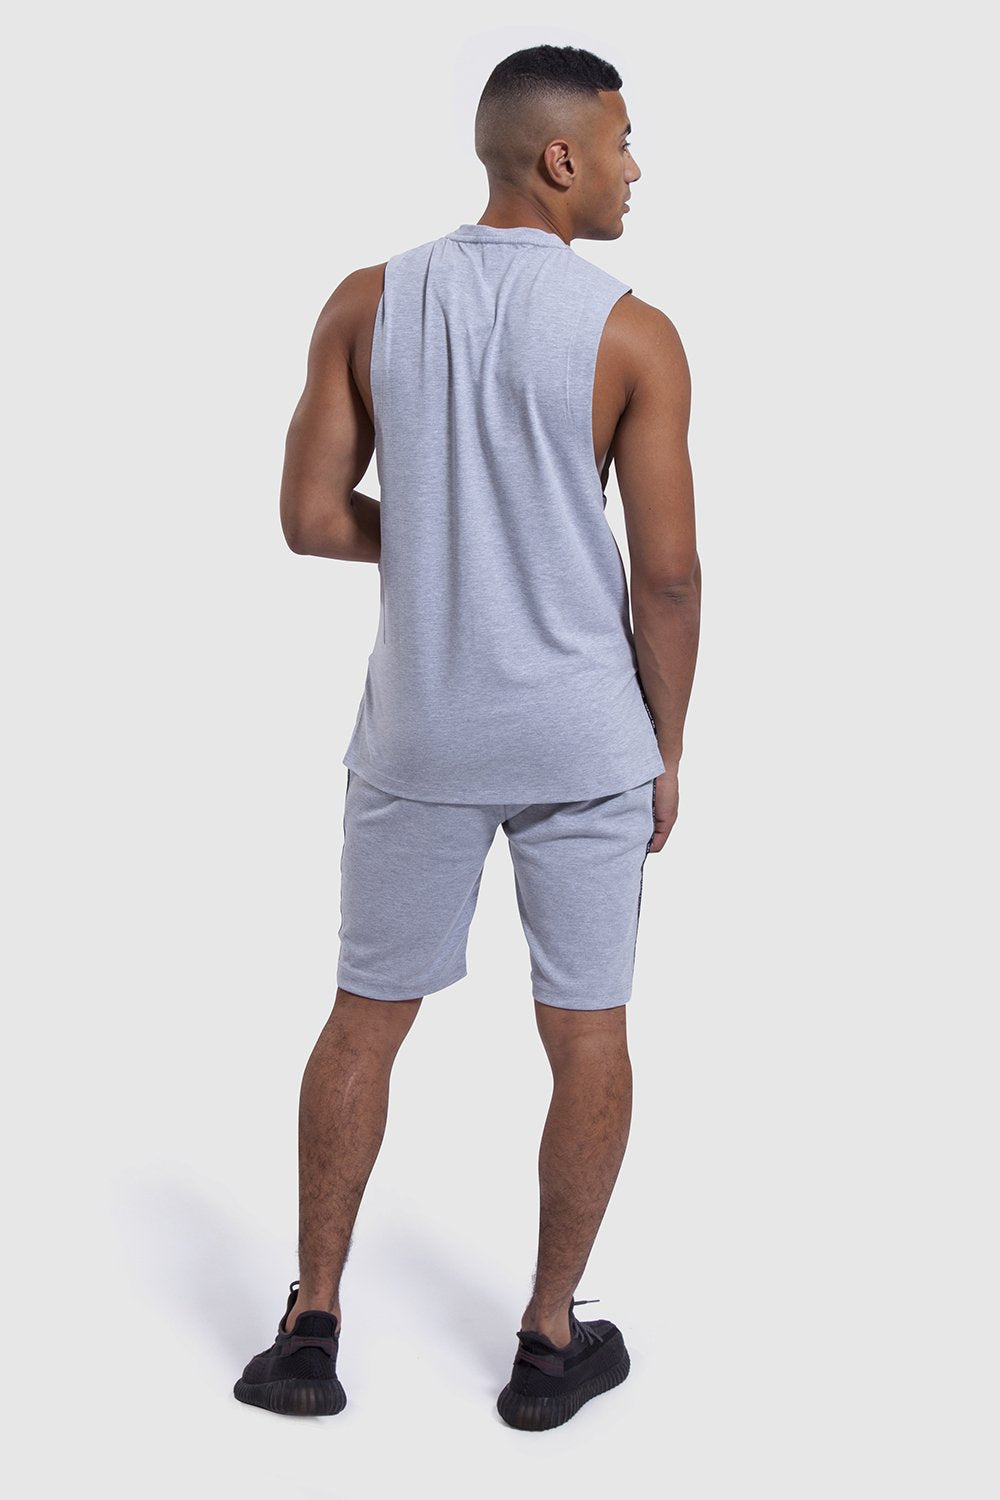 back design of mens gym shorts and vest